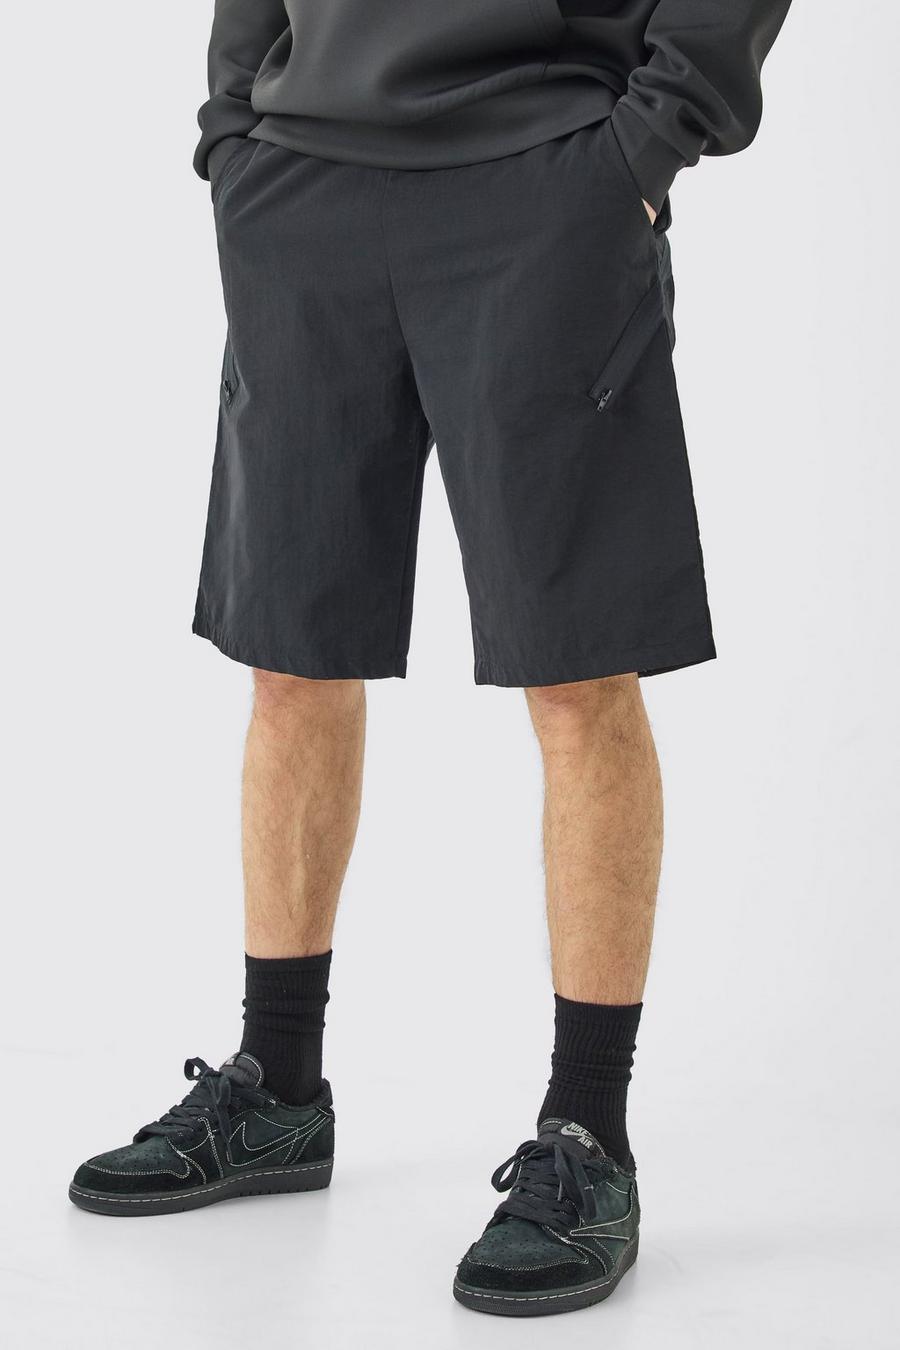 Pantalón corto Tall asimétrico con cintura elástica y cremallera, Black